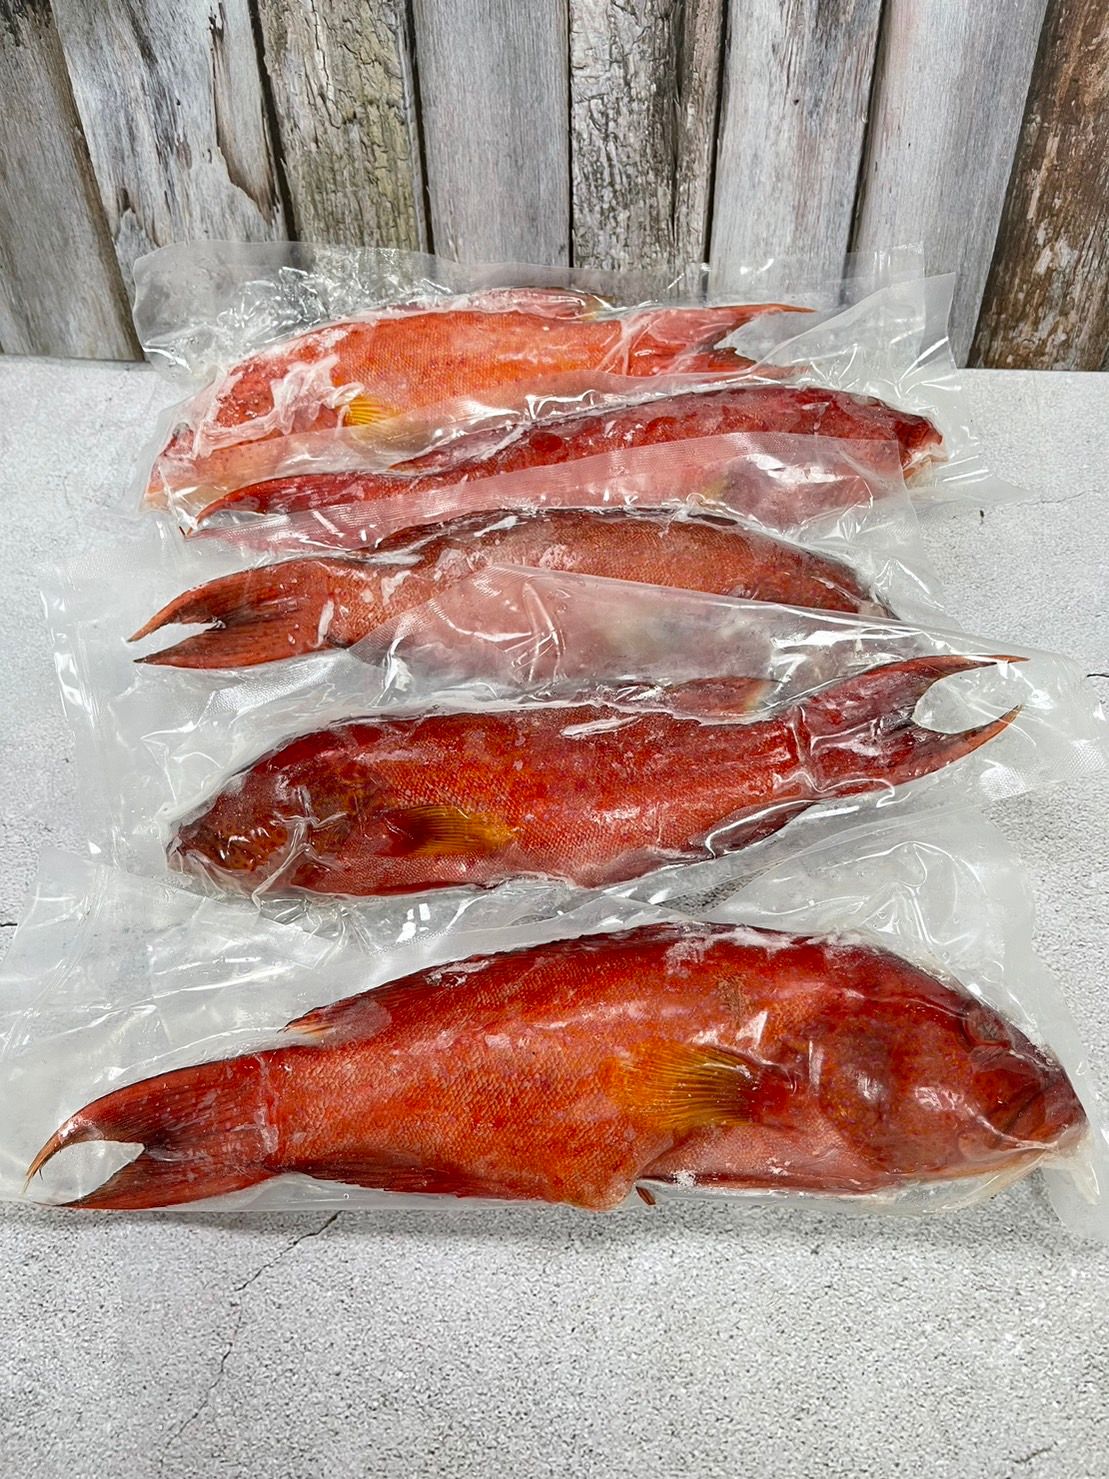 野生紅條石斑魚